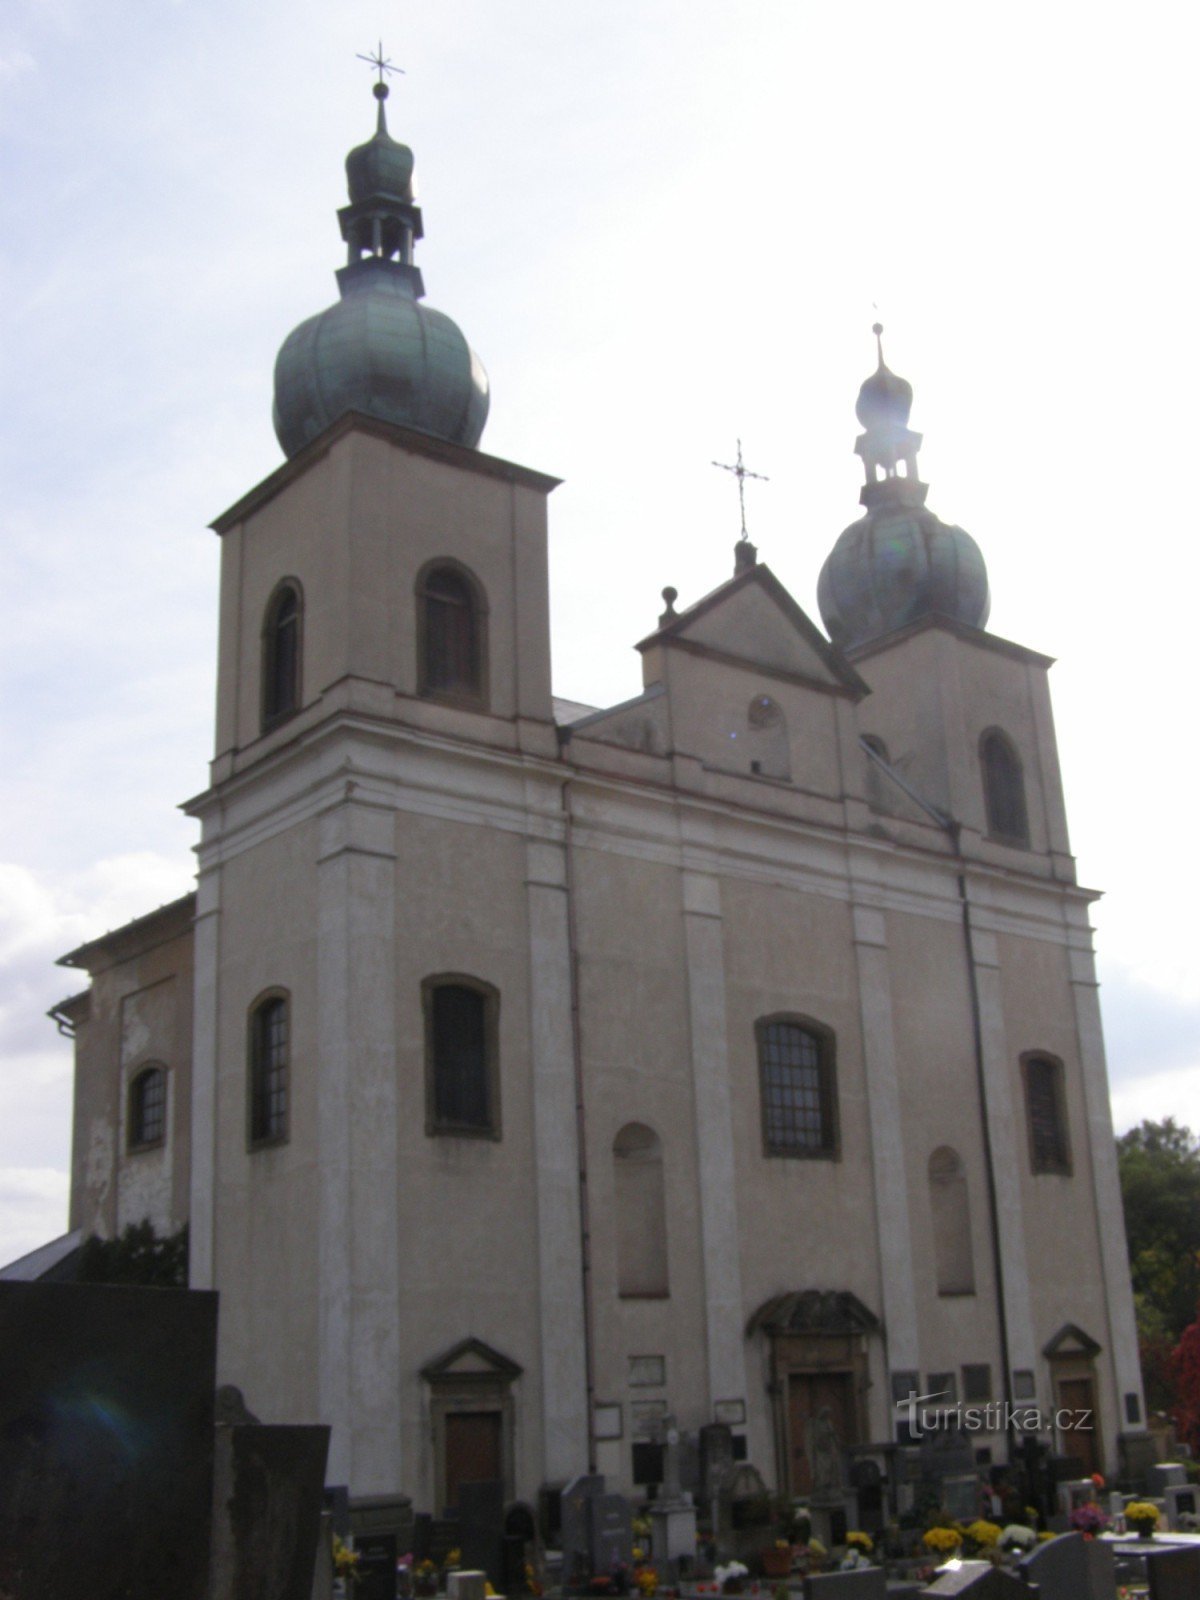 Kostelec nad Orlicí - église de St. Anne